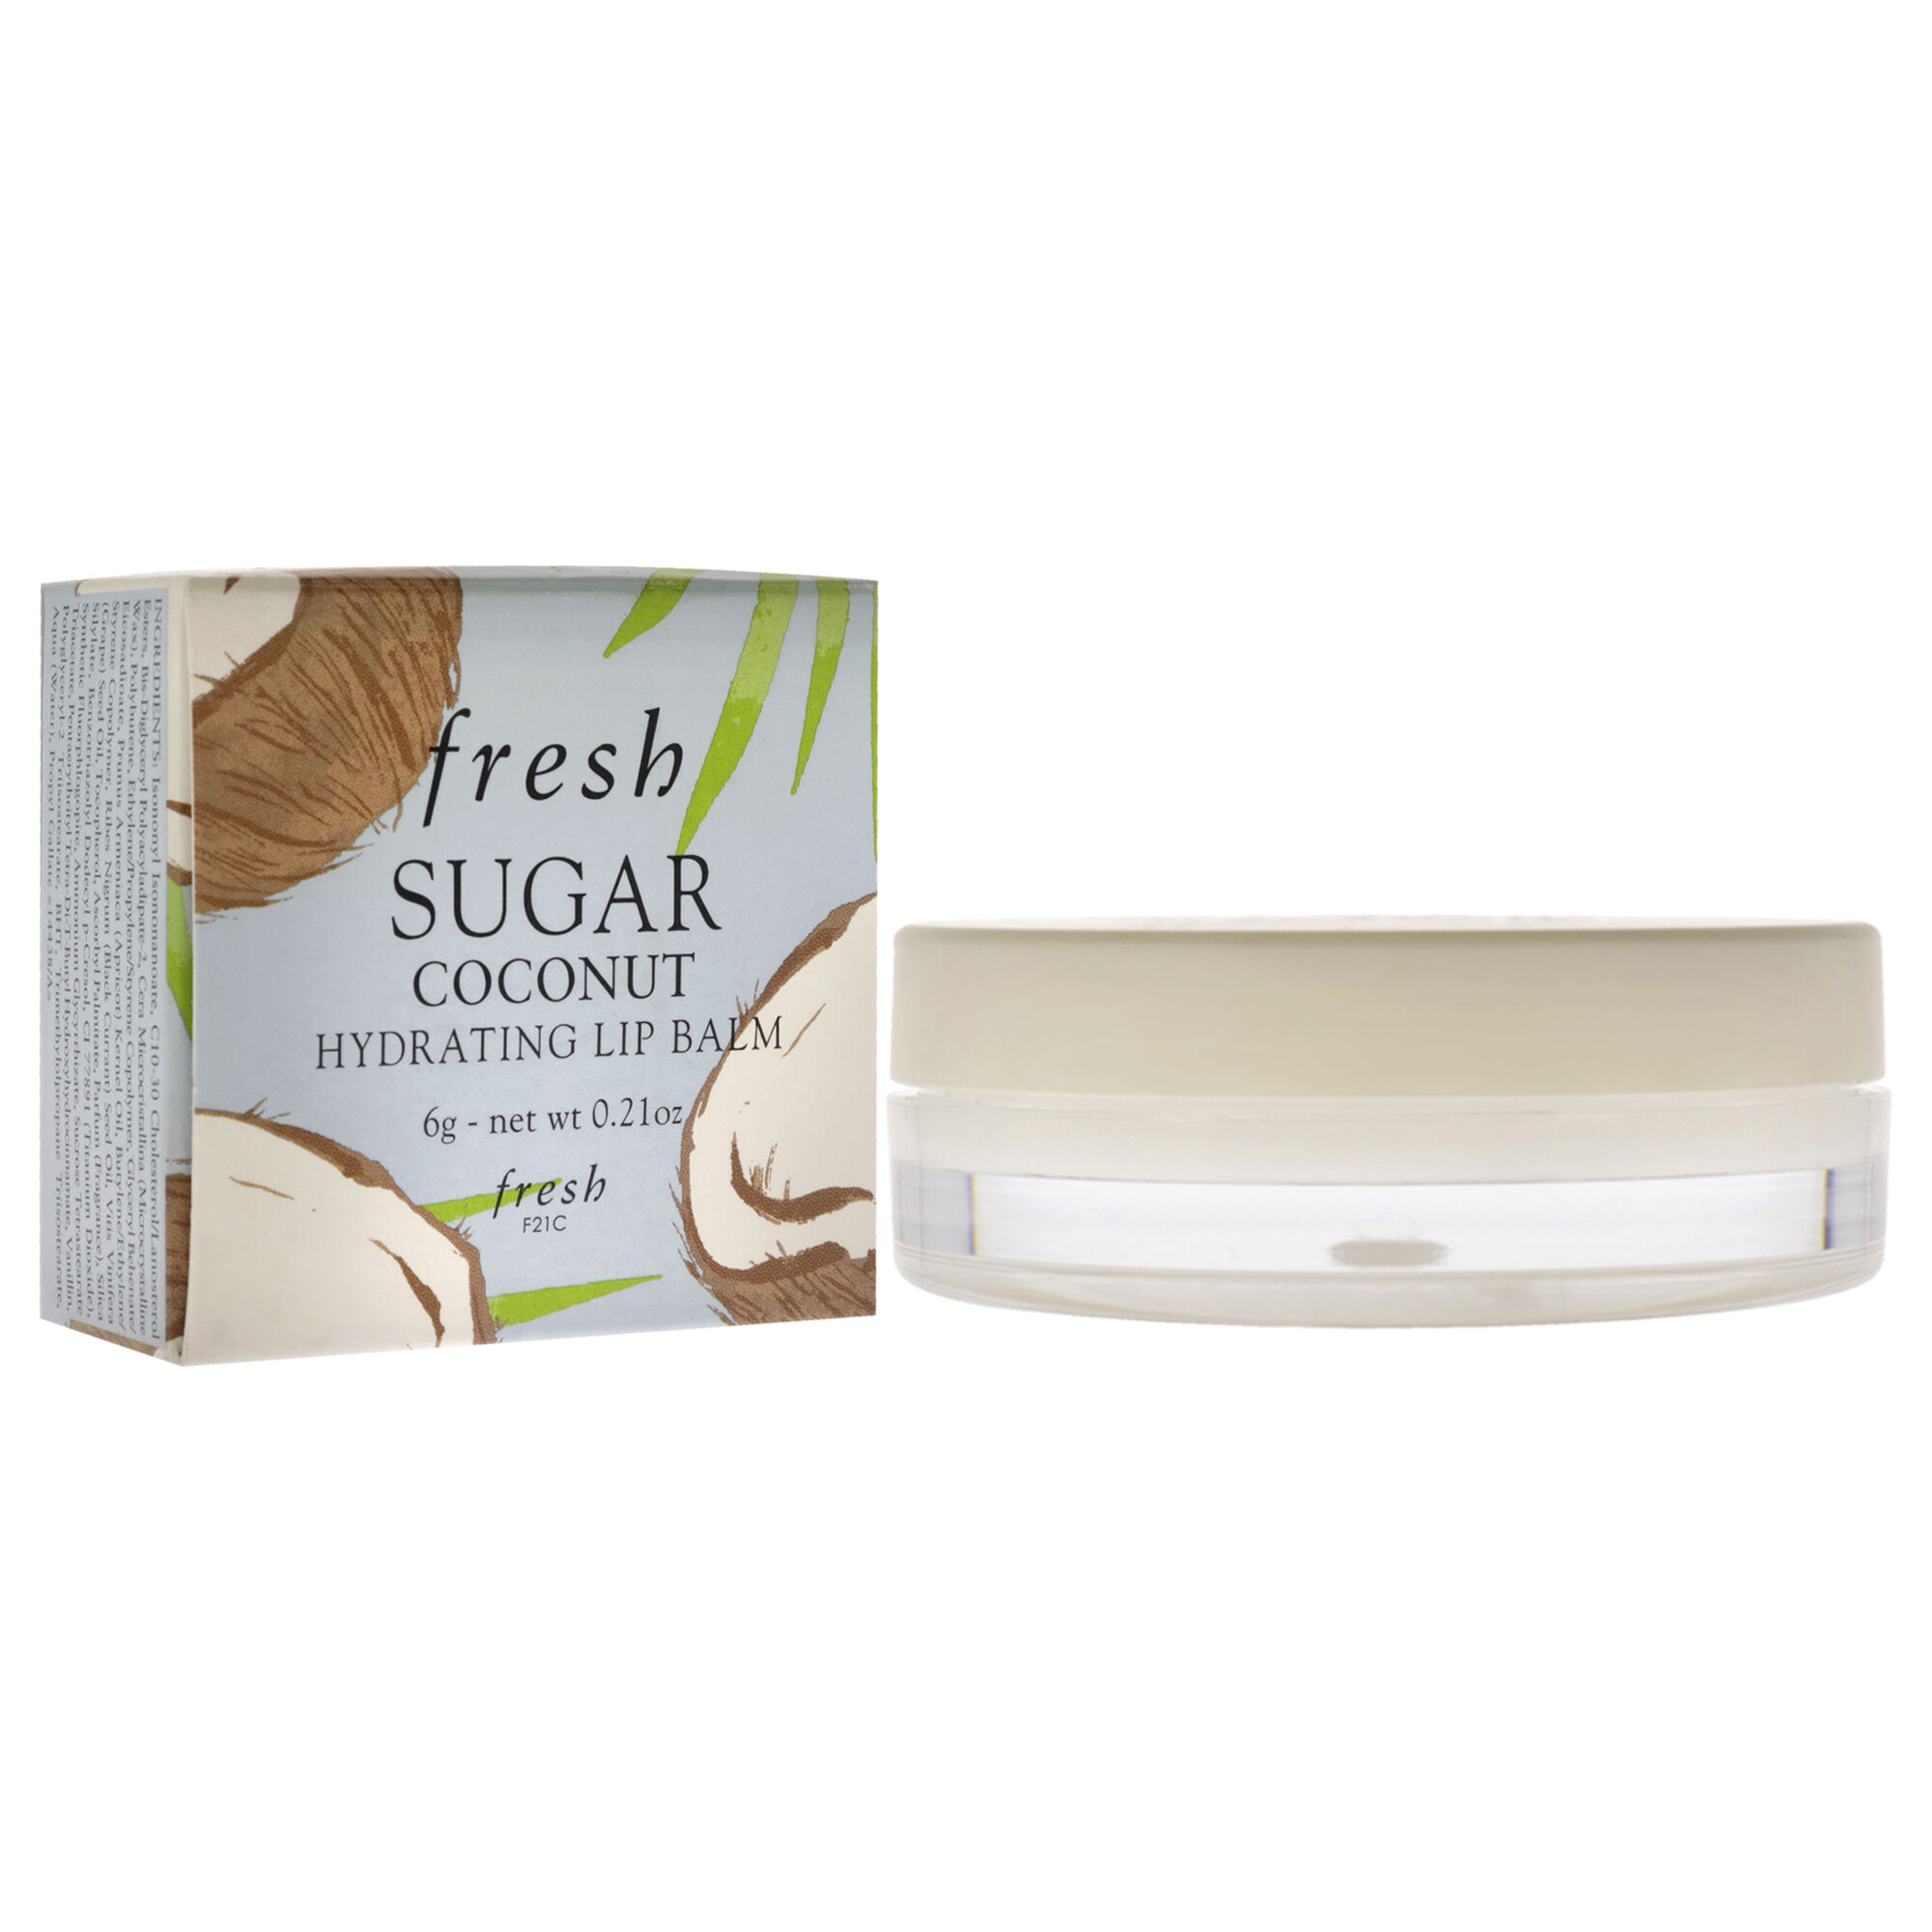 Sugar Hydrating Lip Balm - Coconut by Fresh for Women - 0.21 oz Lip ...